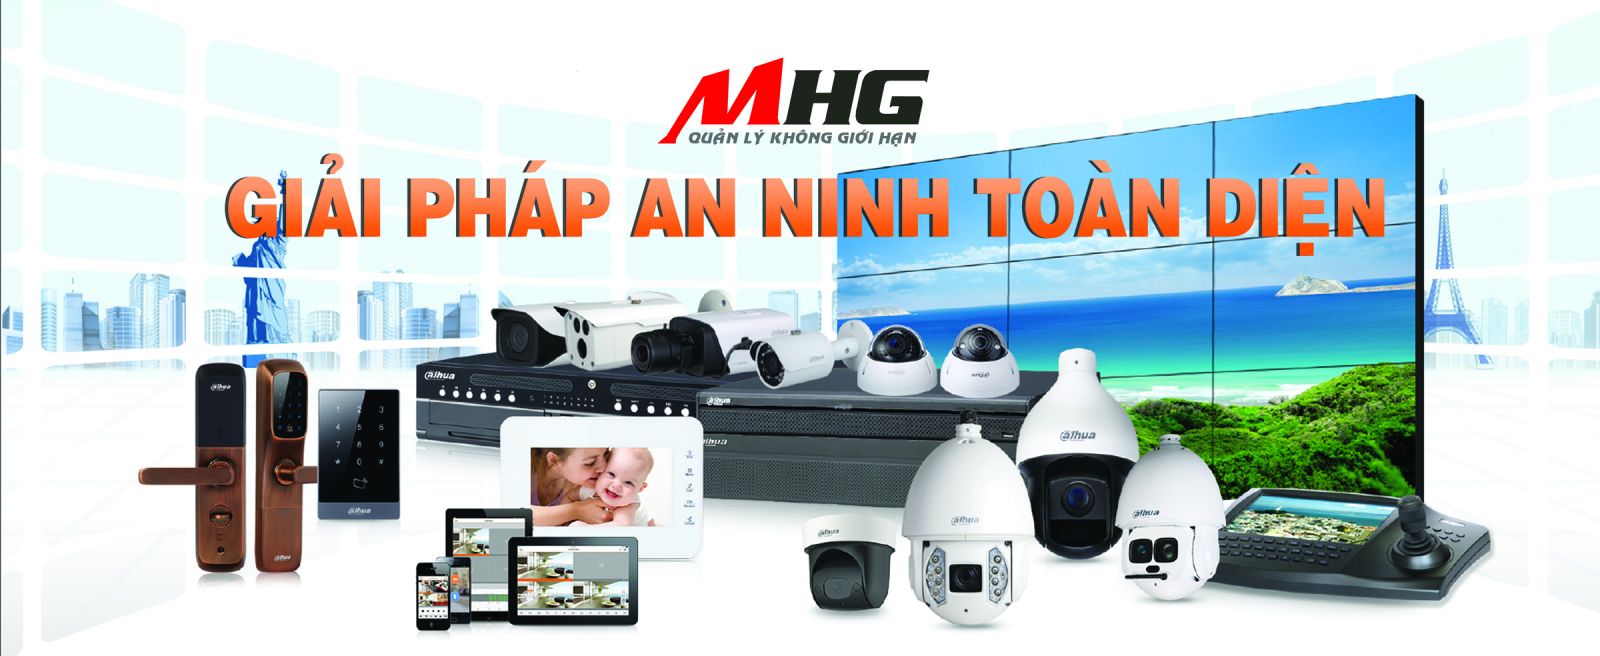 CameraMHG cung cấp giải pháp an ninh toàn diện